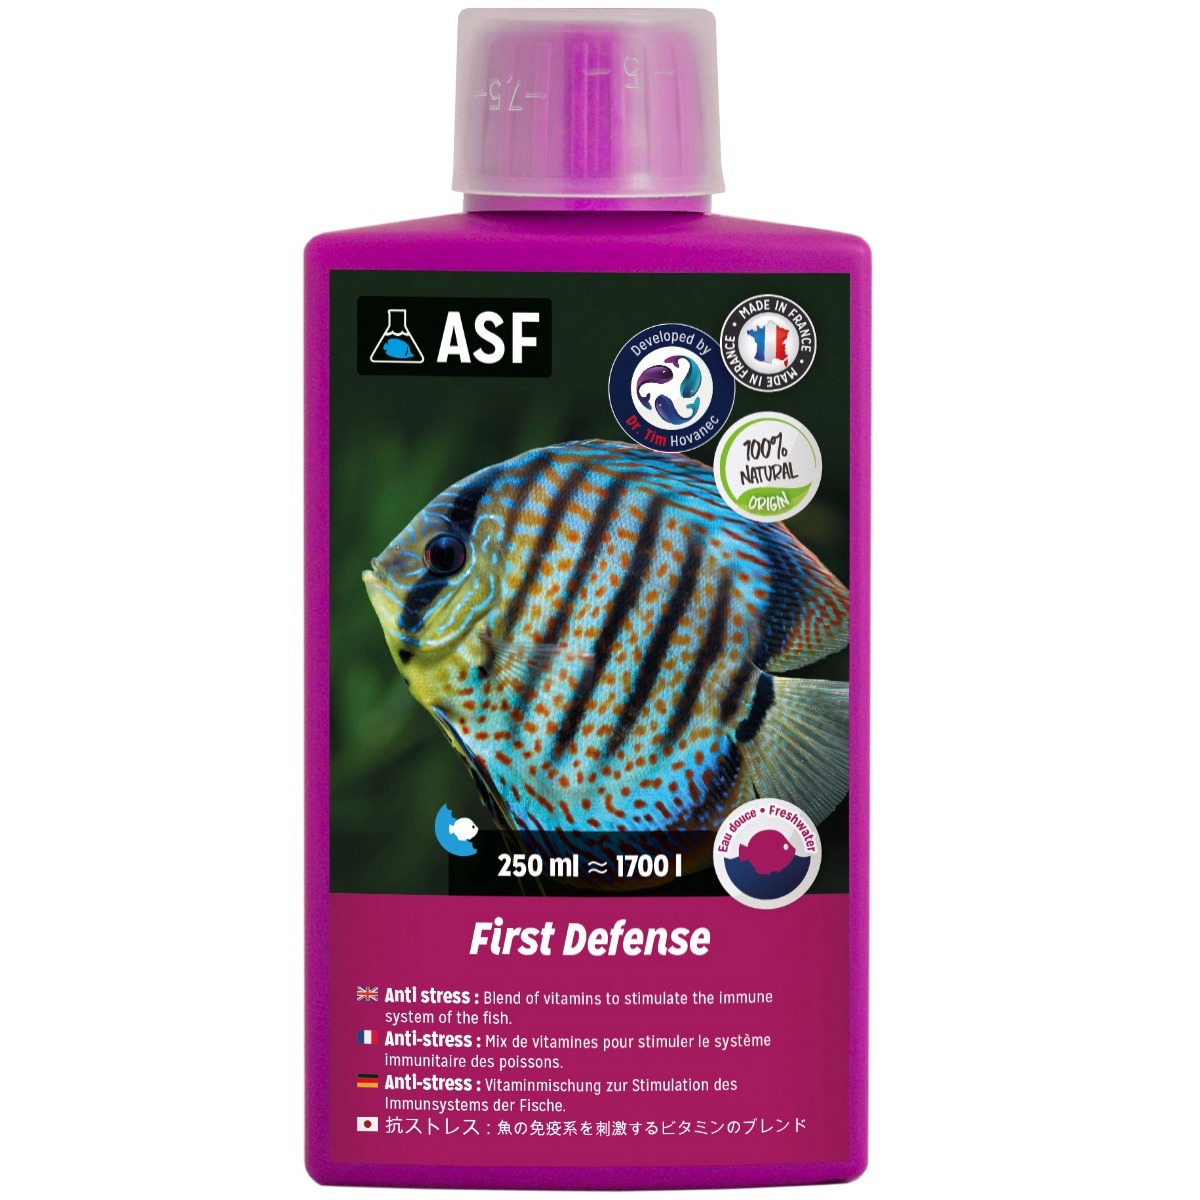 aquarium-systems-first-defense-eau-douce-250-ml-anti-stress-a-base-de-vitamines-stimulant-le-systeme-immunitaire-des-poissons